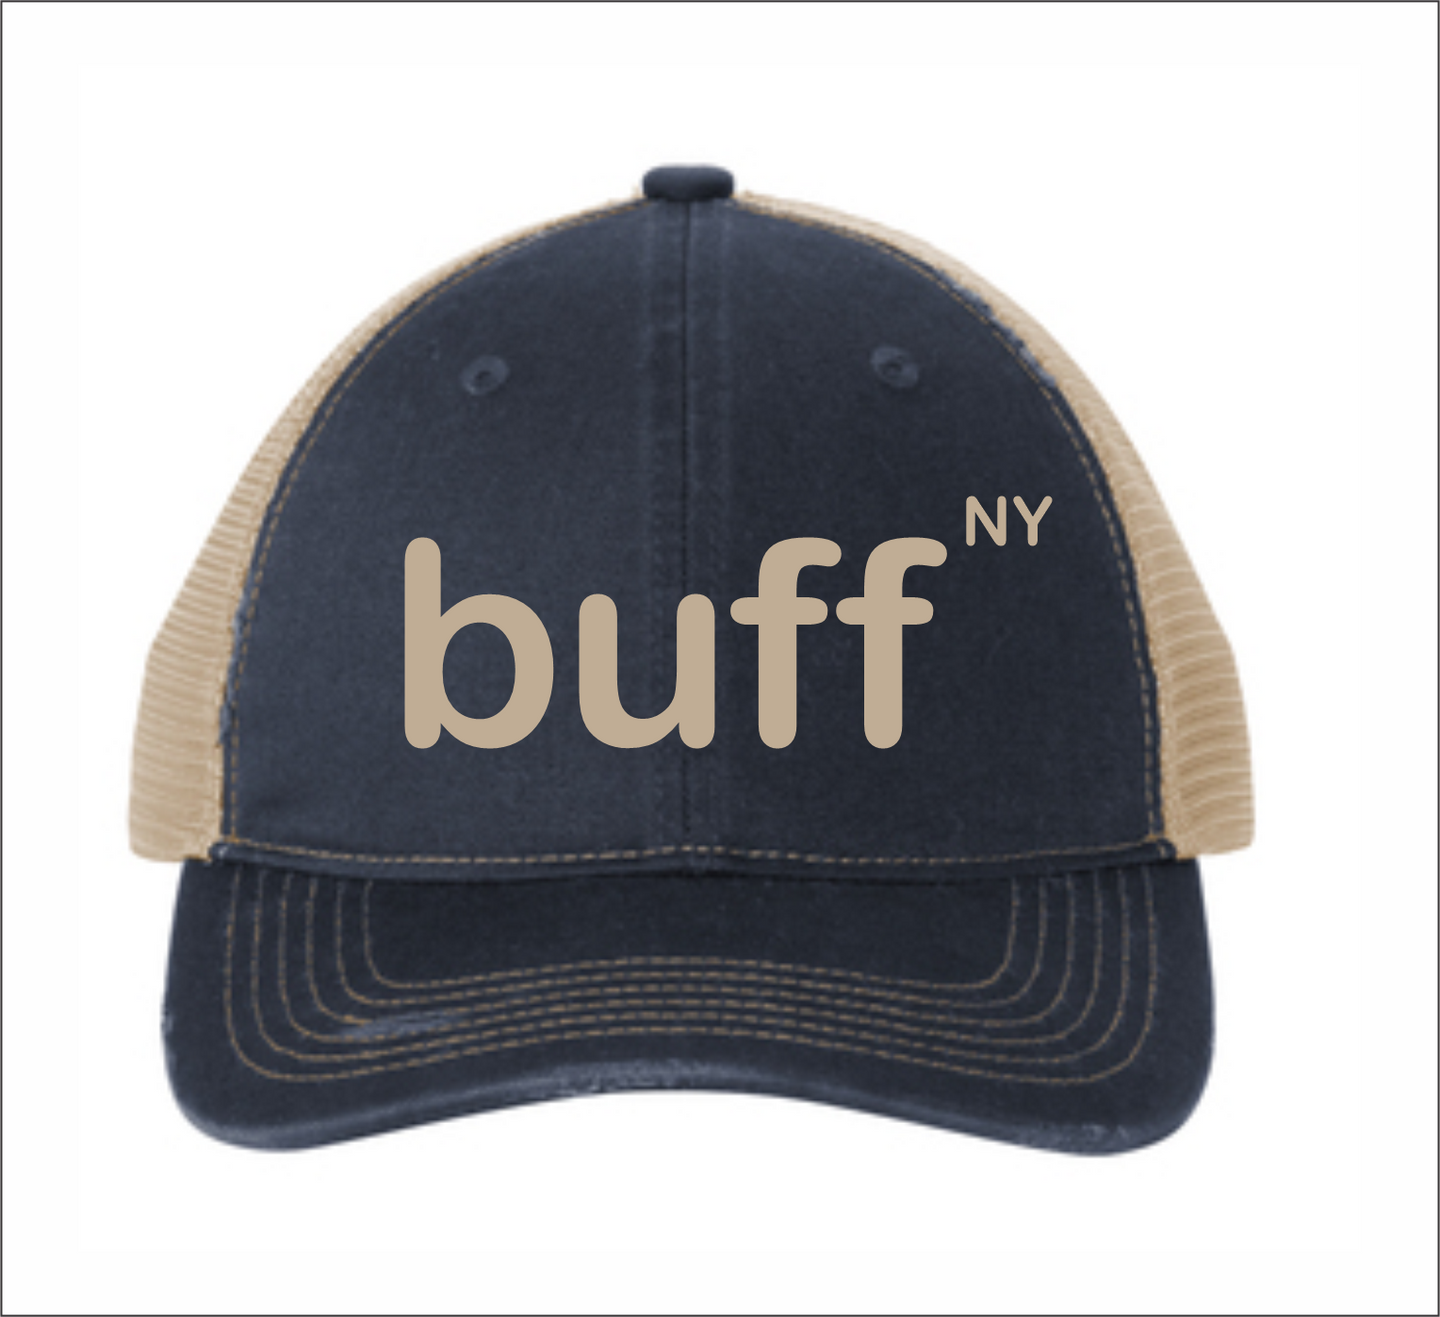 Distressed Cap - buff, NY